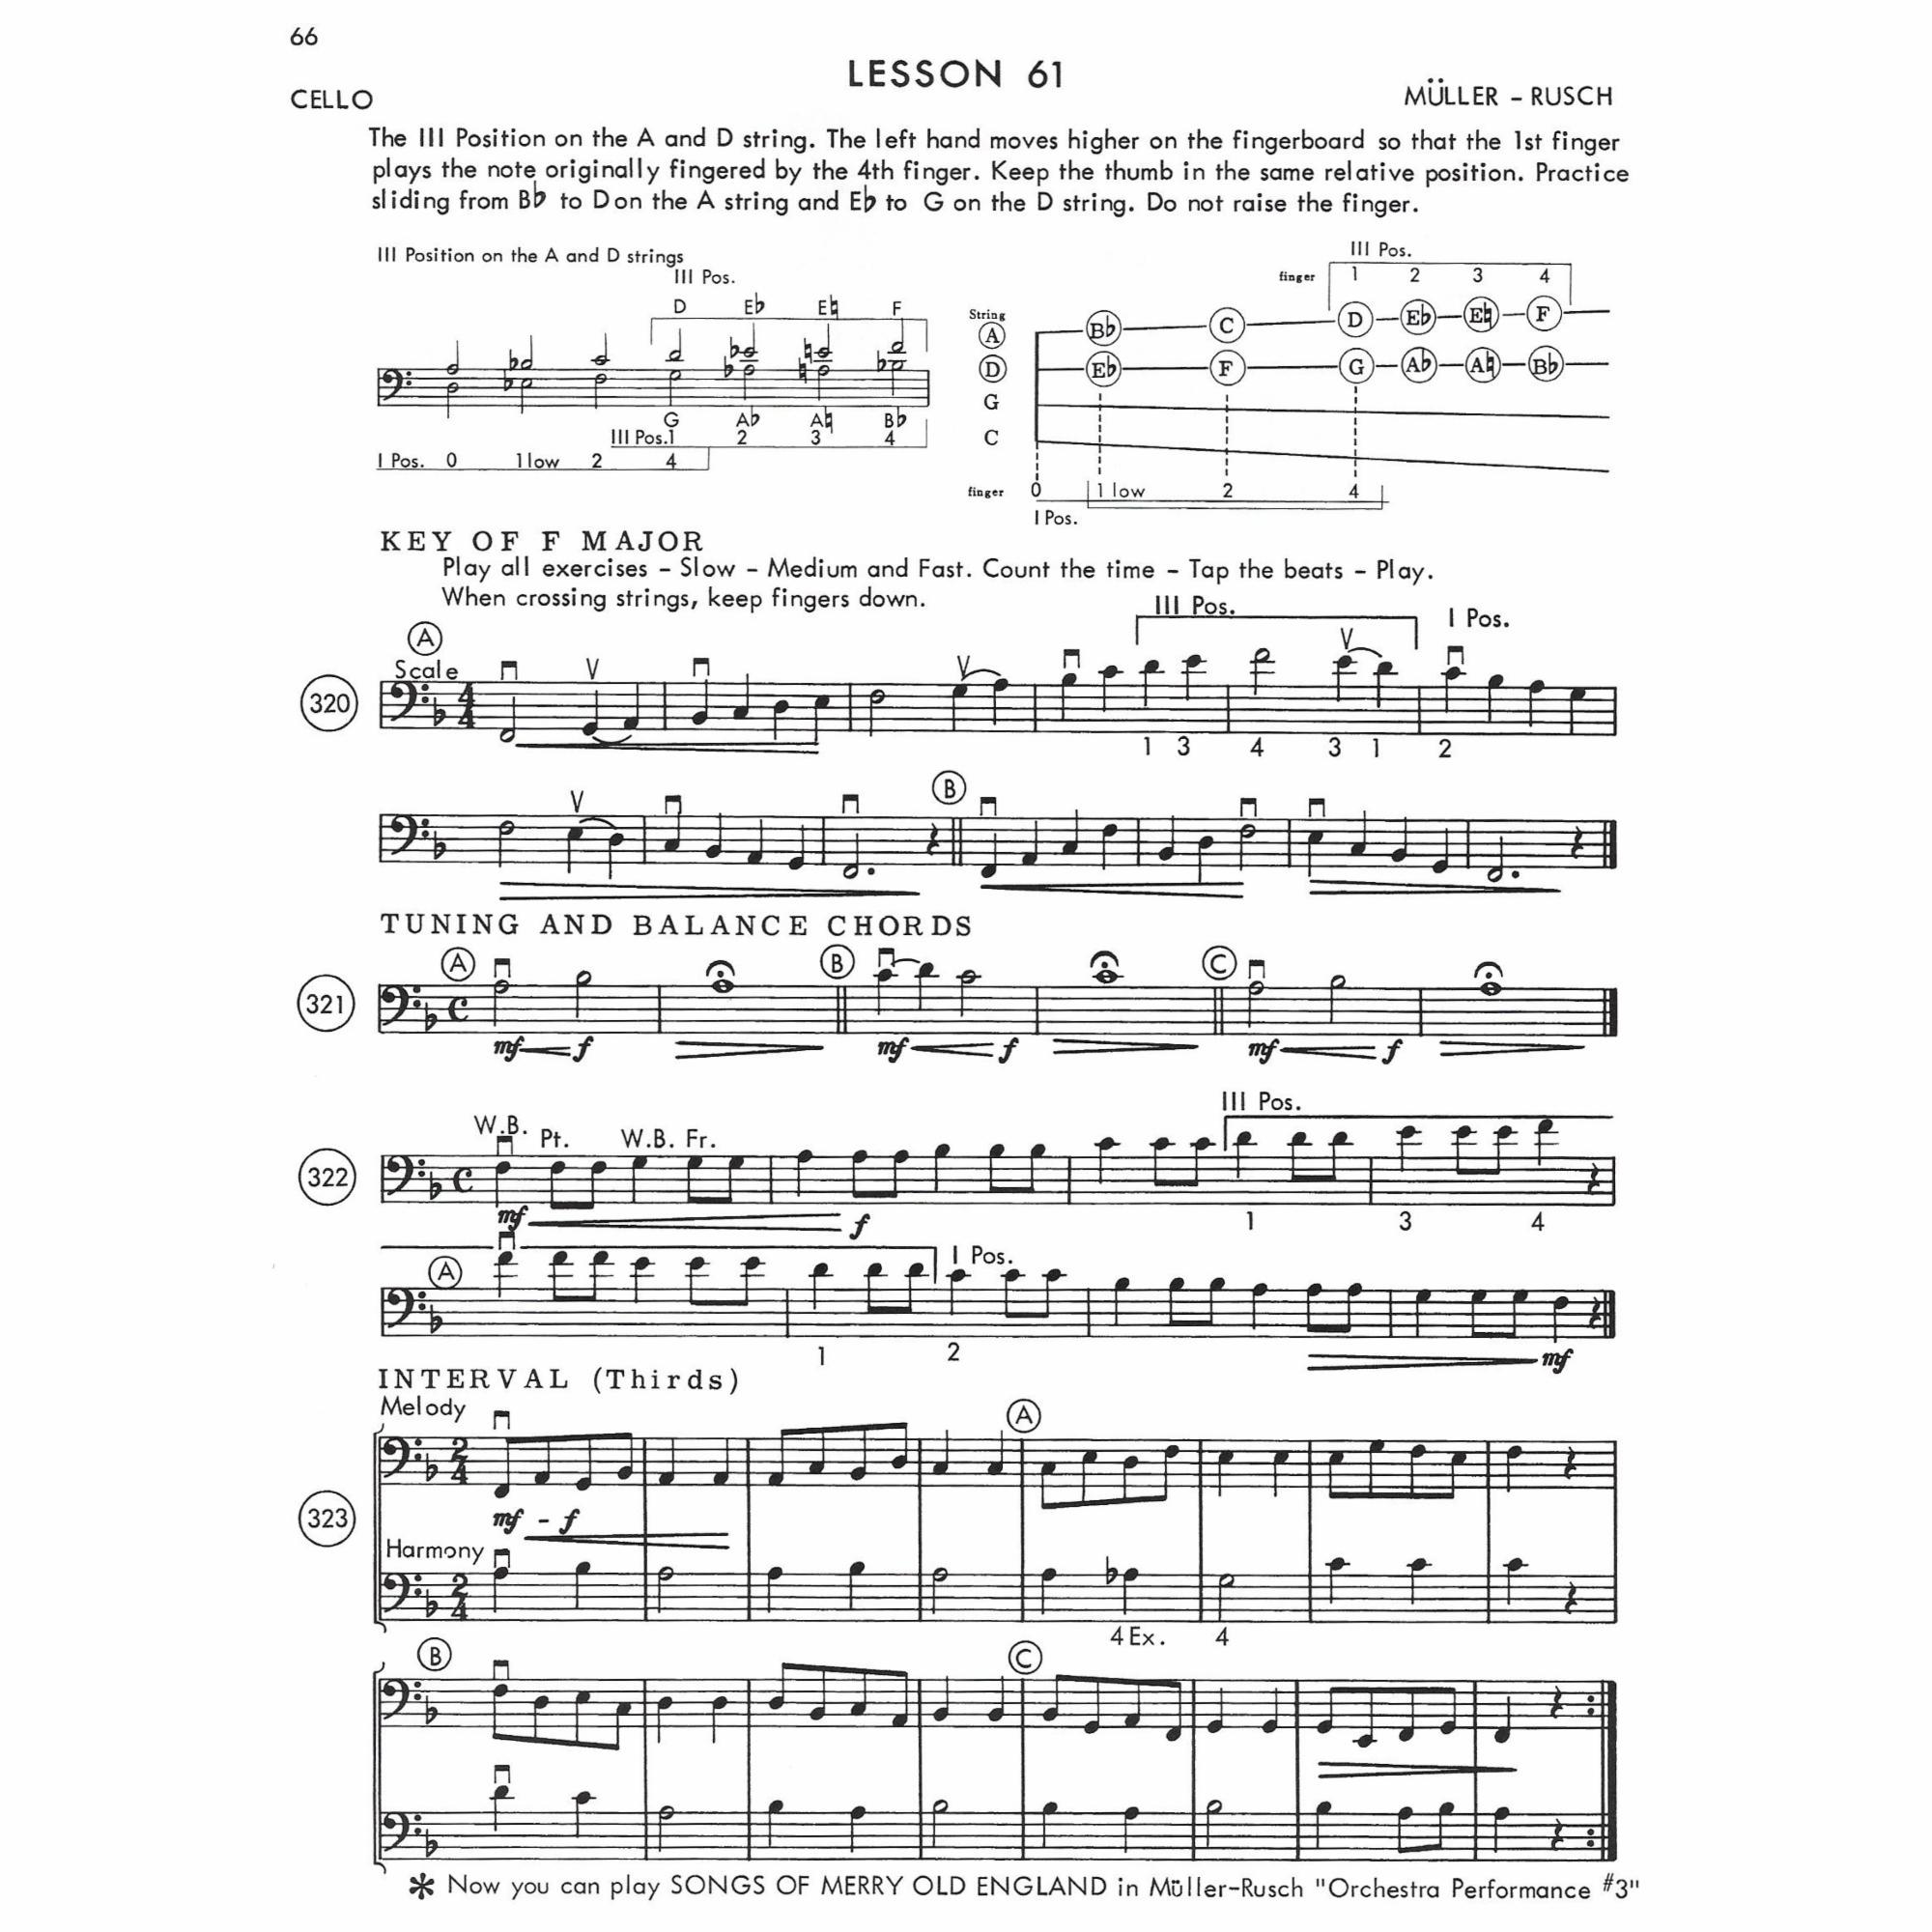 Sample: Cello (Pg. 2/66)